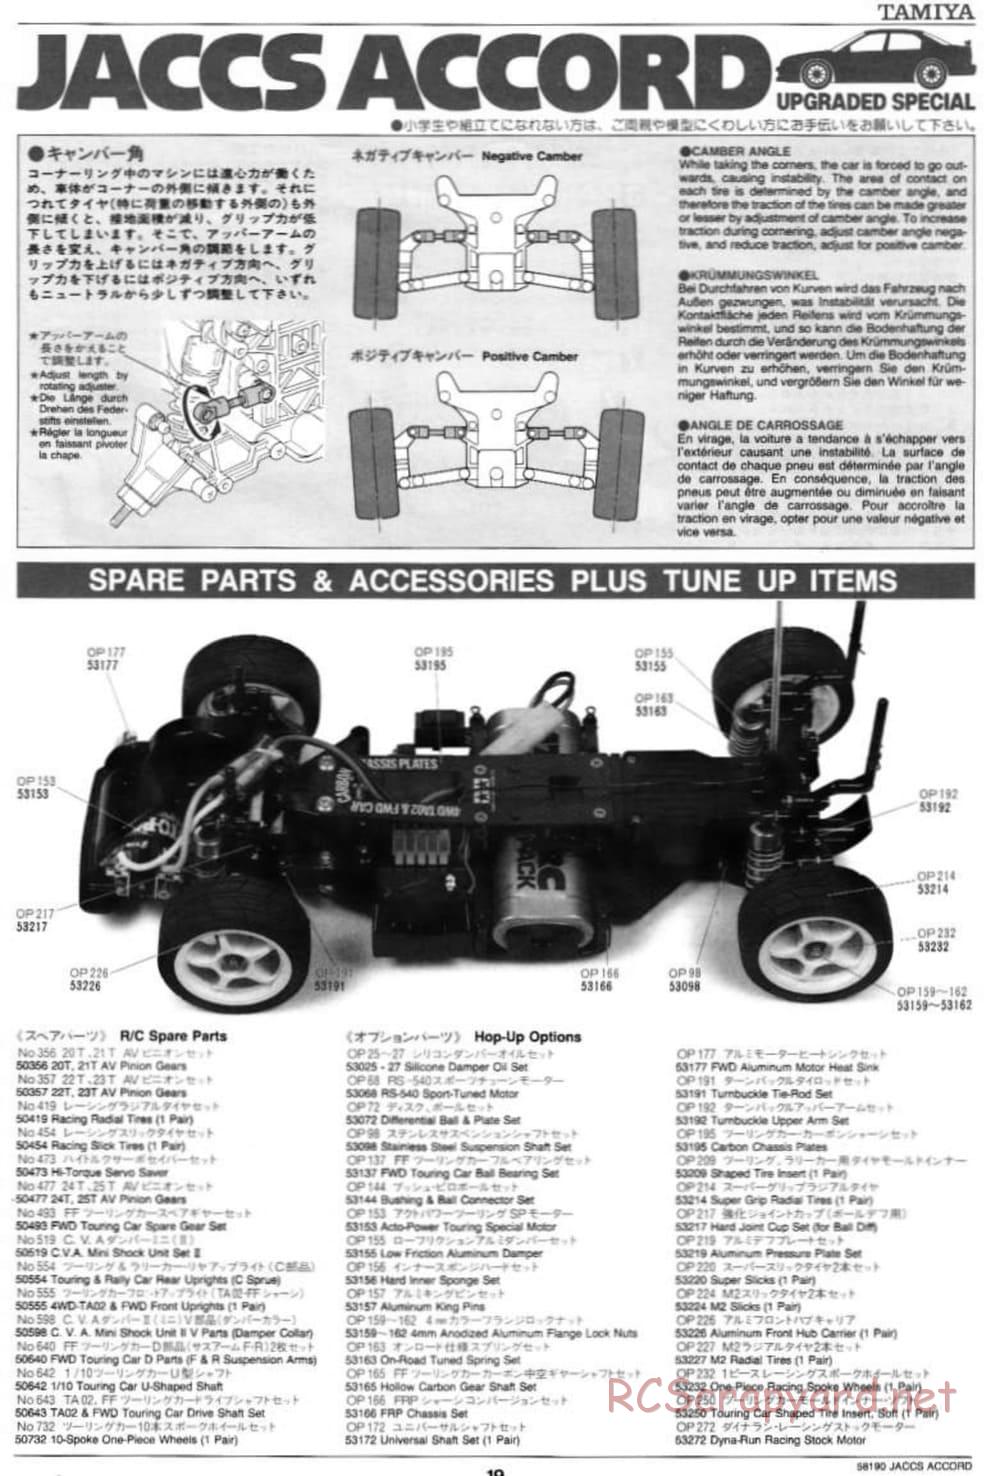 Tamiya - JACCS Honda Accord - FF-01 Chassis - Manual - Page 19